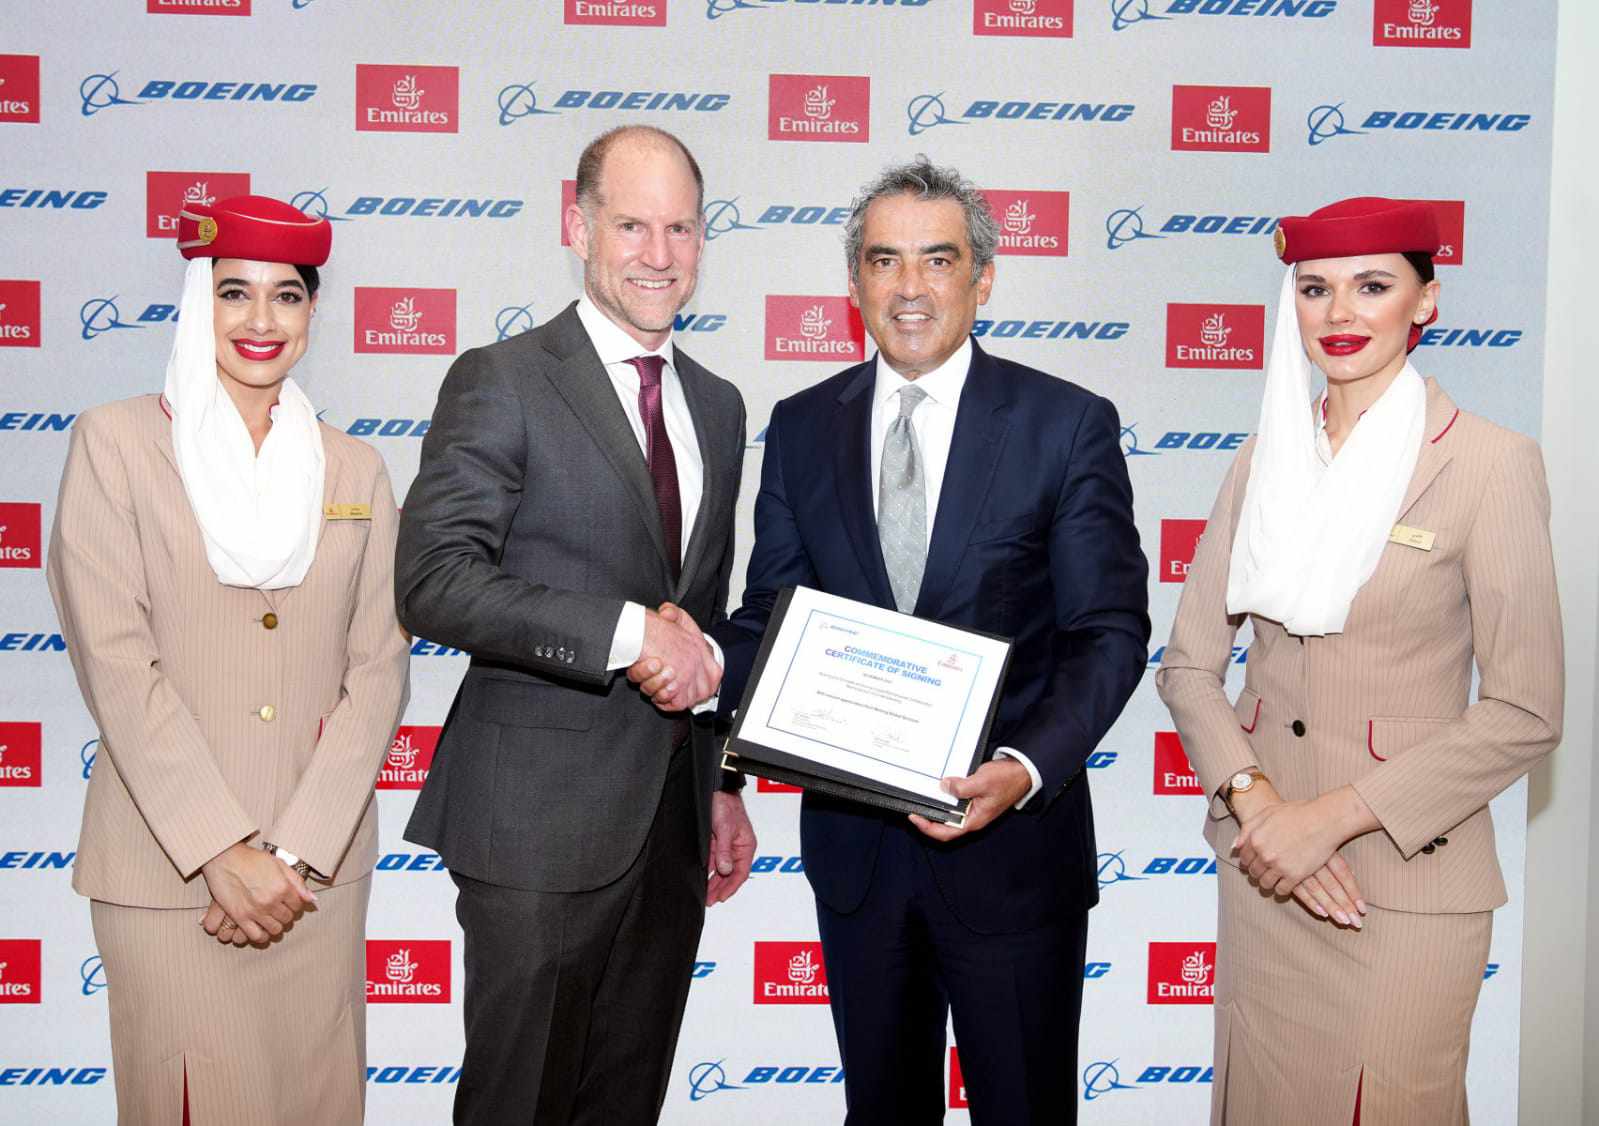 طيران الإمارات وبوينج توقعان اتفاقا للحلول الرقمية في مجال صيانة الطائرات

